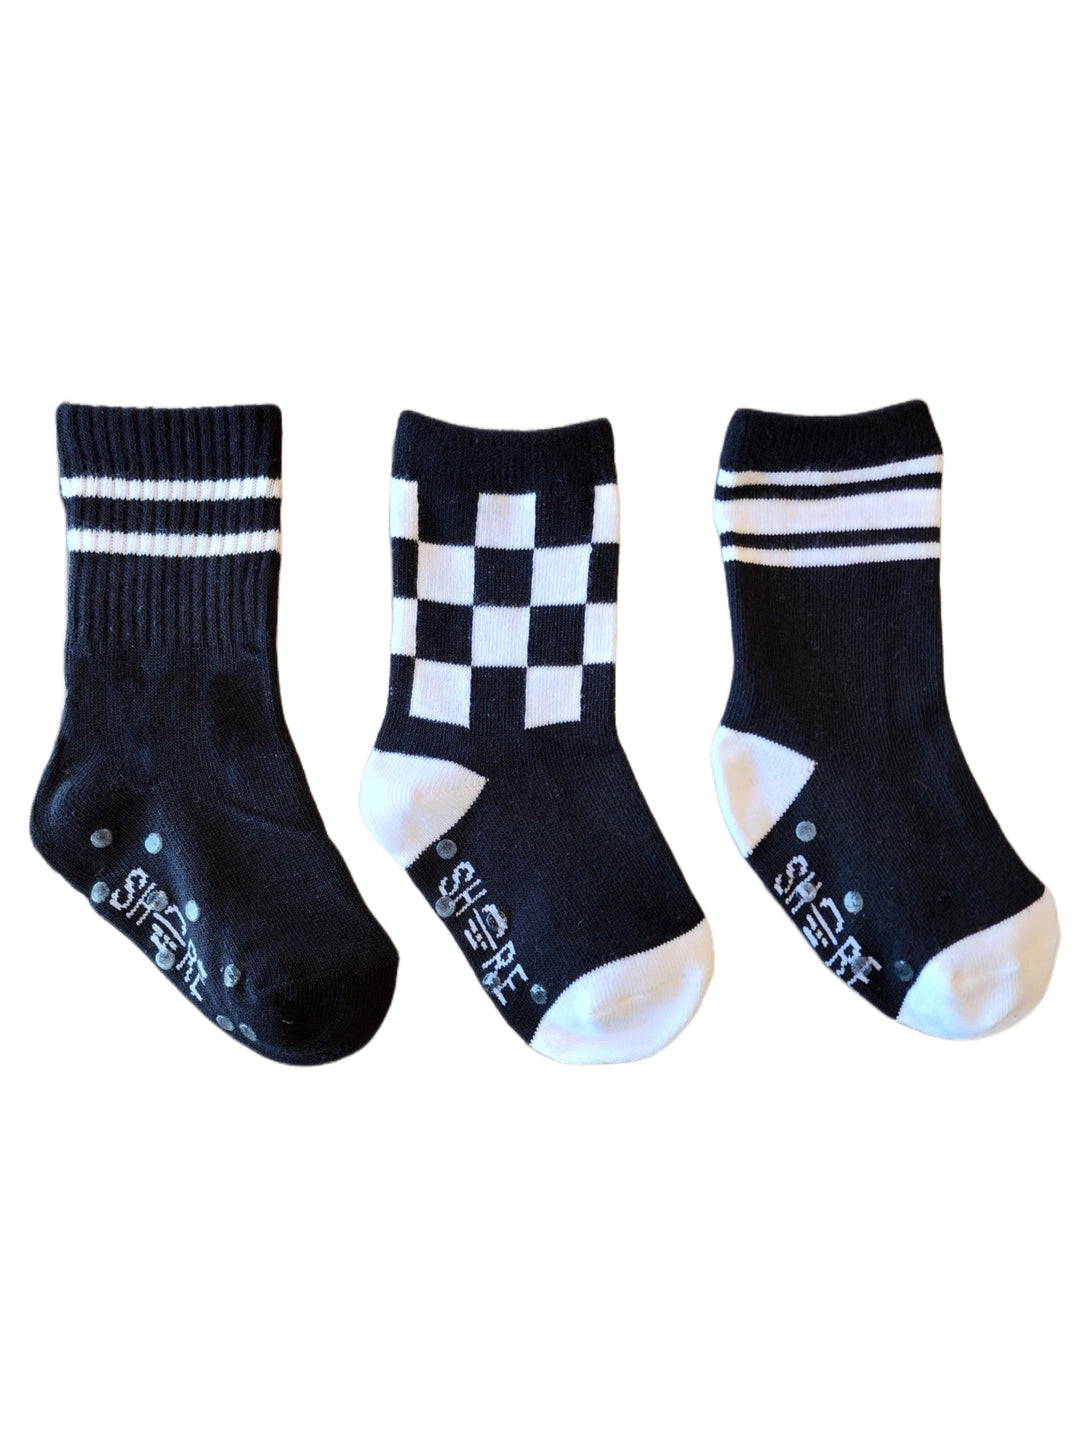 Black/White Socks 3pk